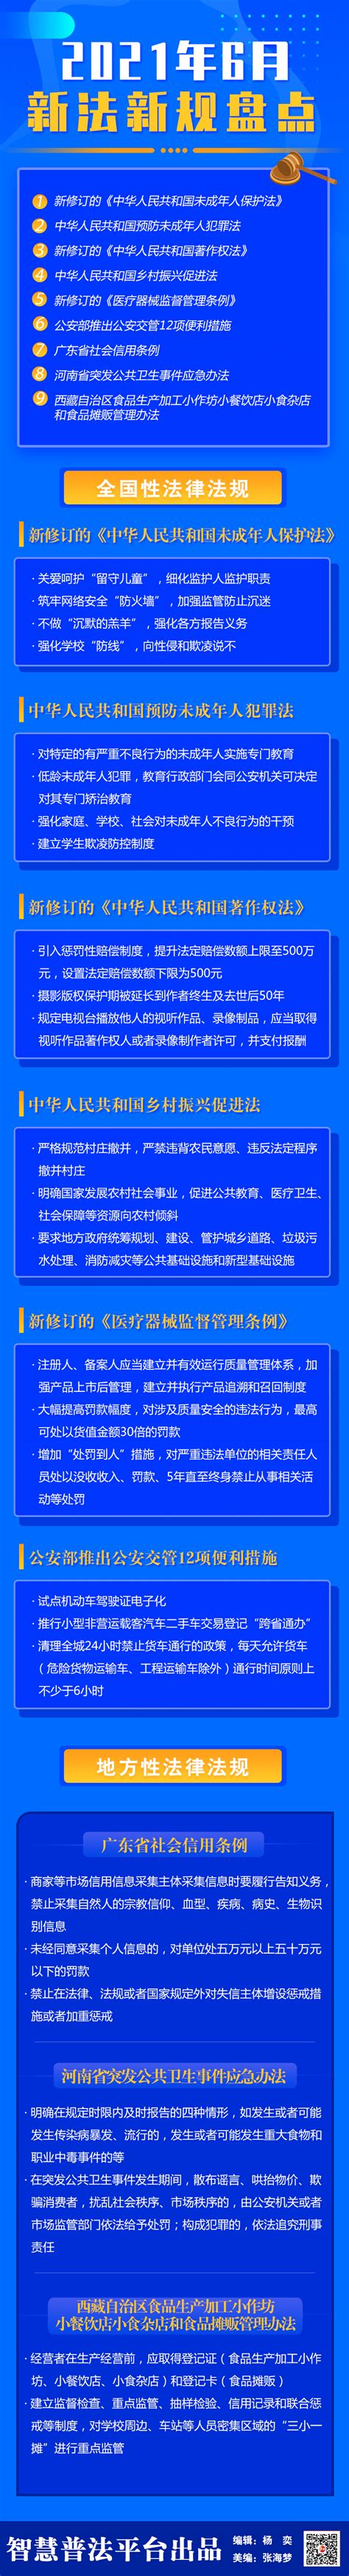 【图说普法】2021年6月新法新规盘点_福州市晋安区政府